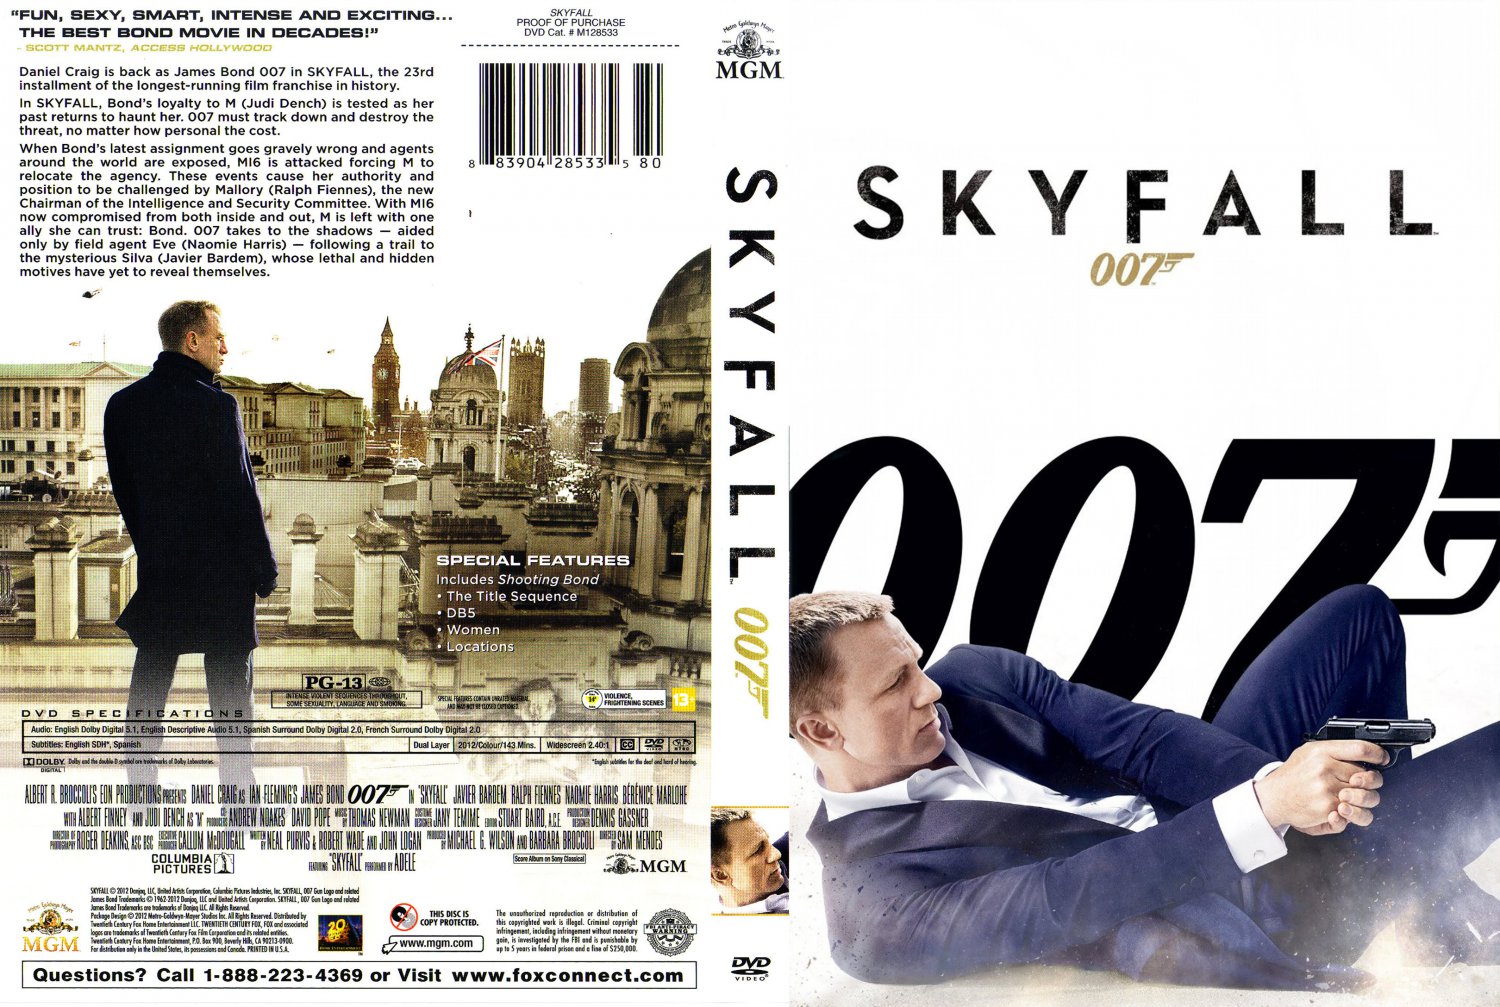 007 - Skyfall - Movie DVD Scanned Covers - 007 - Skyfall ...
 Skyfall Dvd Cover